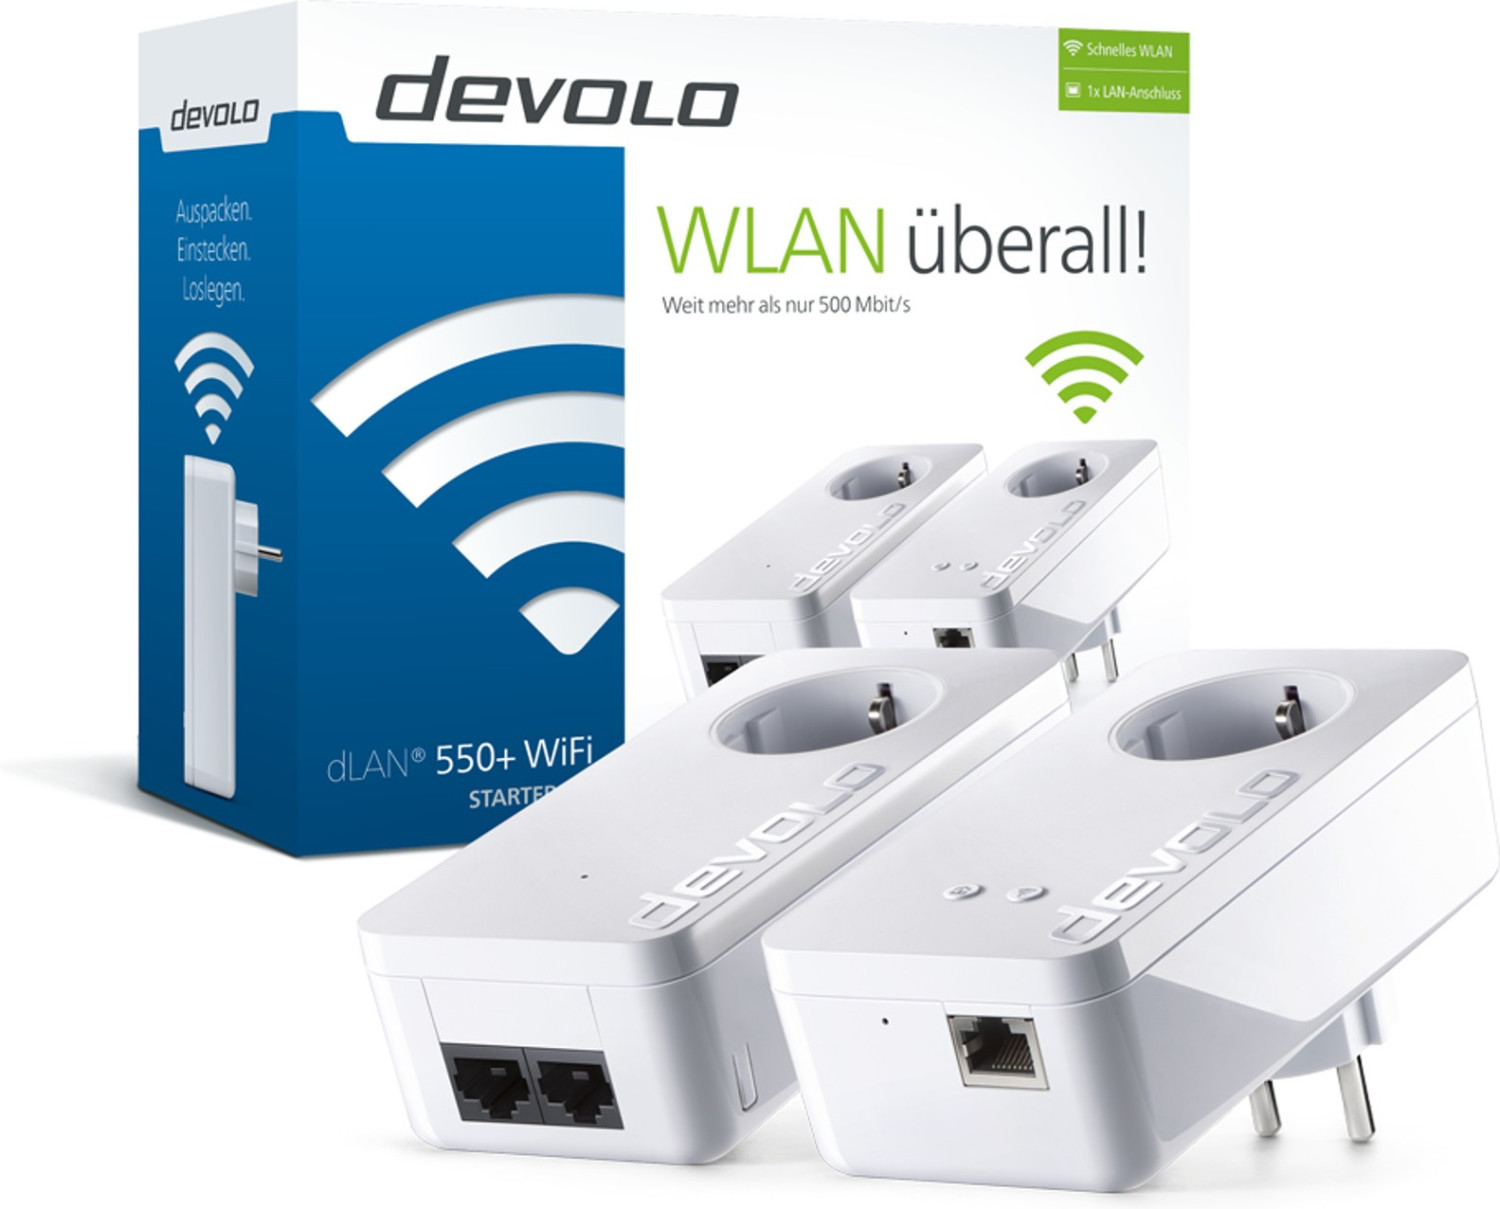 devolo dLAN® 550 WiFi: Der neue WLAN-Powerline-Adapter im kompakten Format  mit starker Leistung. - DigitalDaily